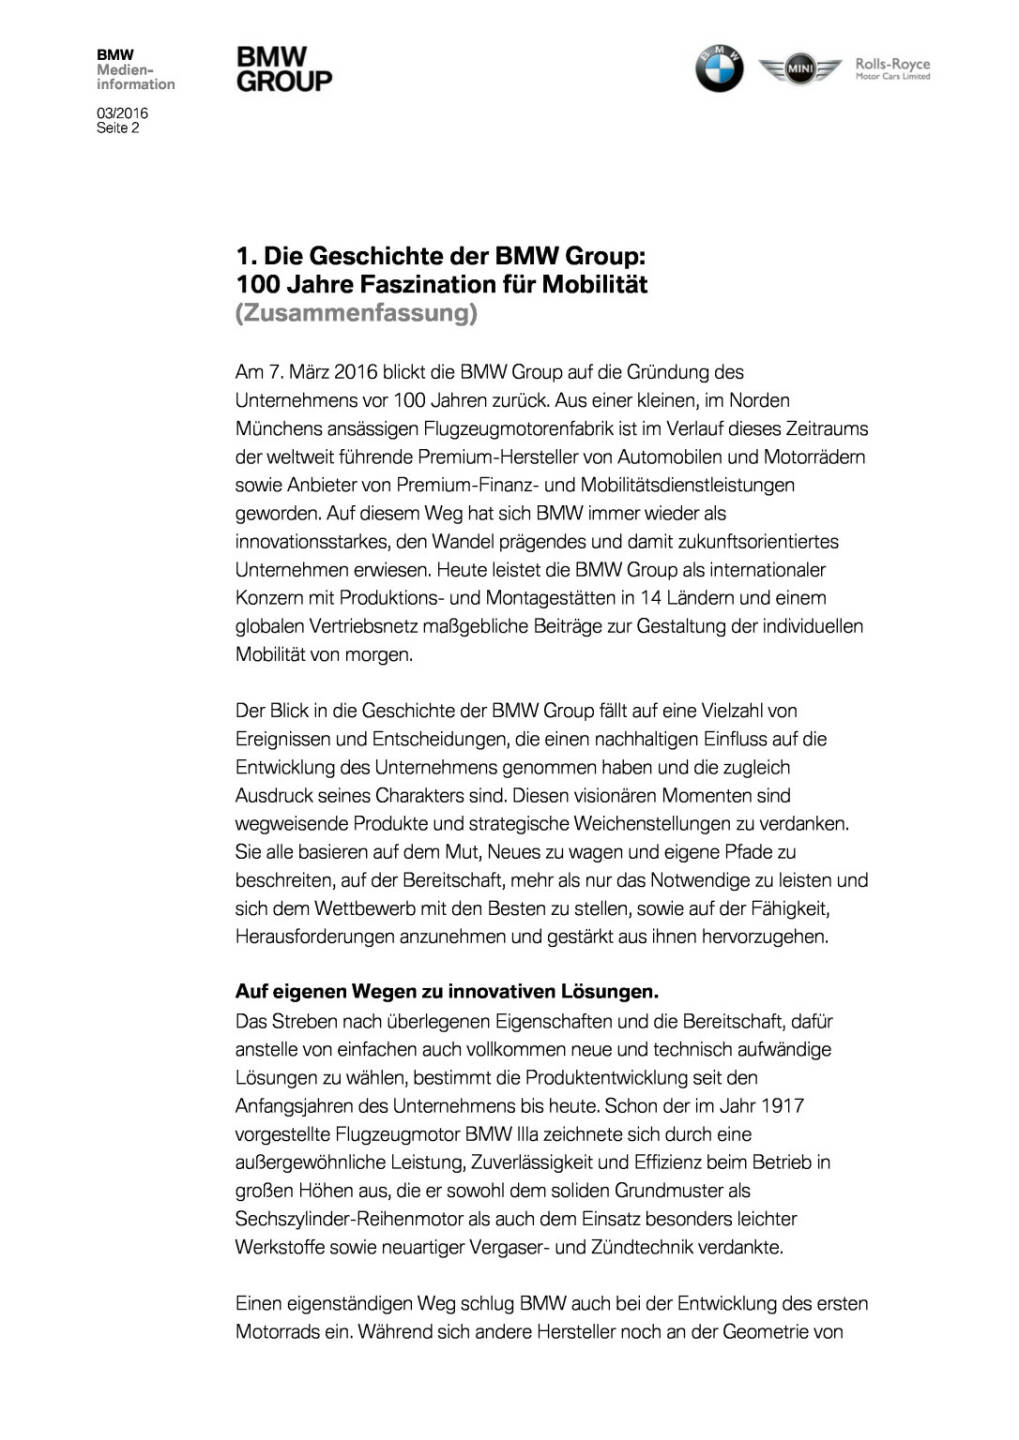 Die Geschichte der BMW Group - 100 Jahre Faszination für Mobilität , Seite 2/41, komplettes Dokument unter http://boerse-social.com/static/uploads/file_729_die_geschichte_der_bmw_group_-_100_jahre_faszination_fur_mobilitat.pdf